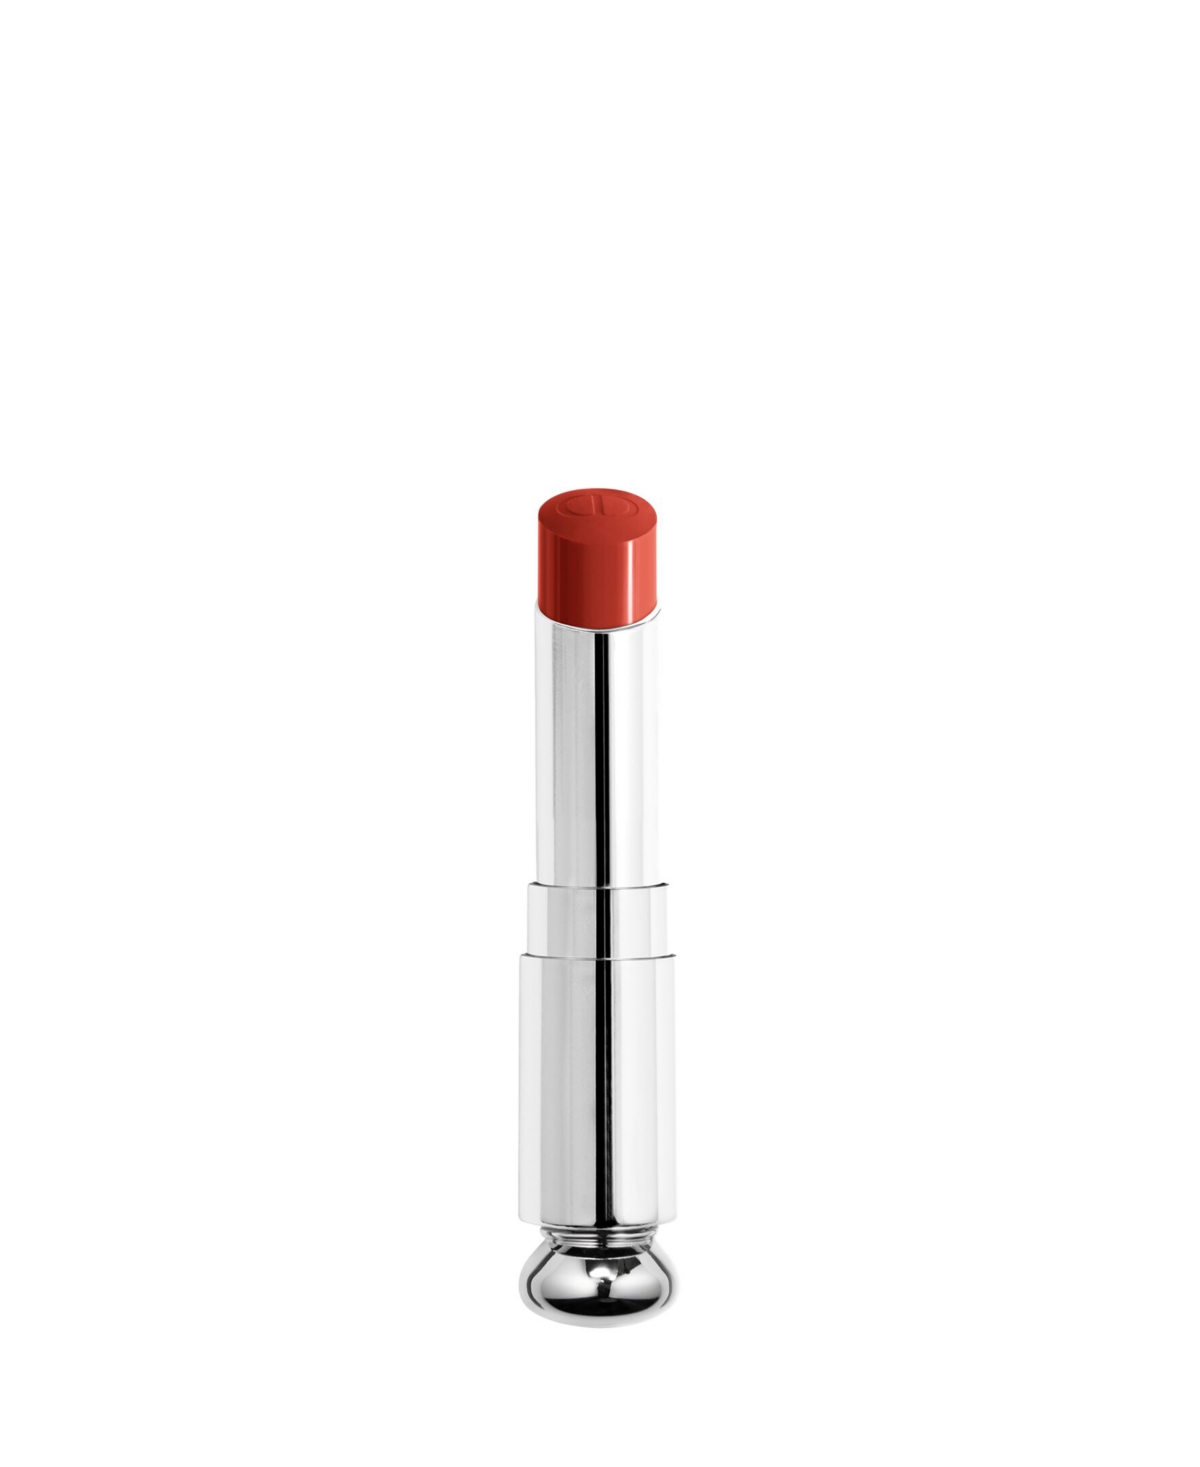 Dior Addict Shine Lipstick Refill In Saddle (brick Red)